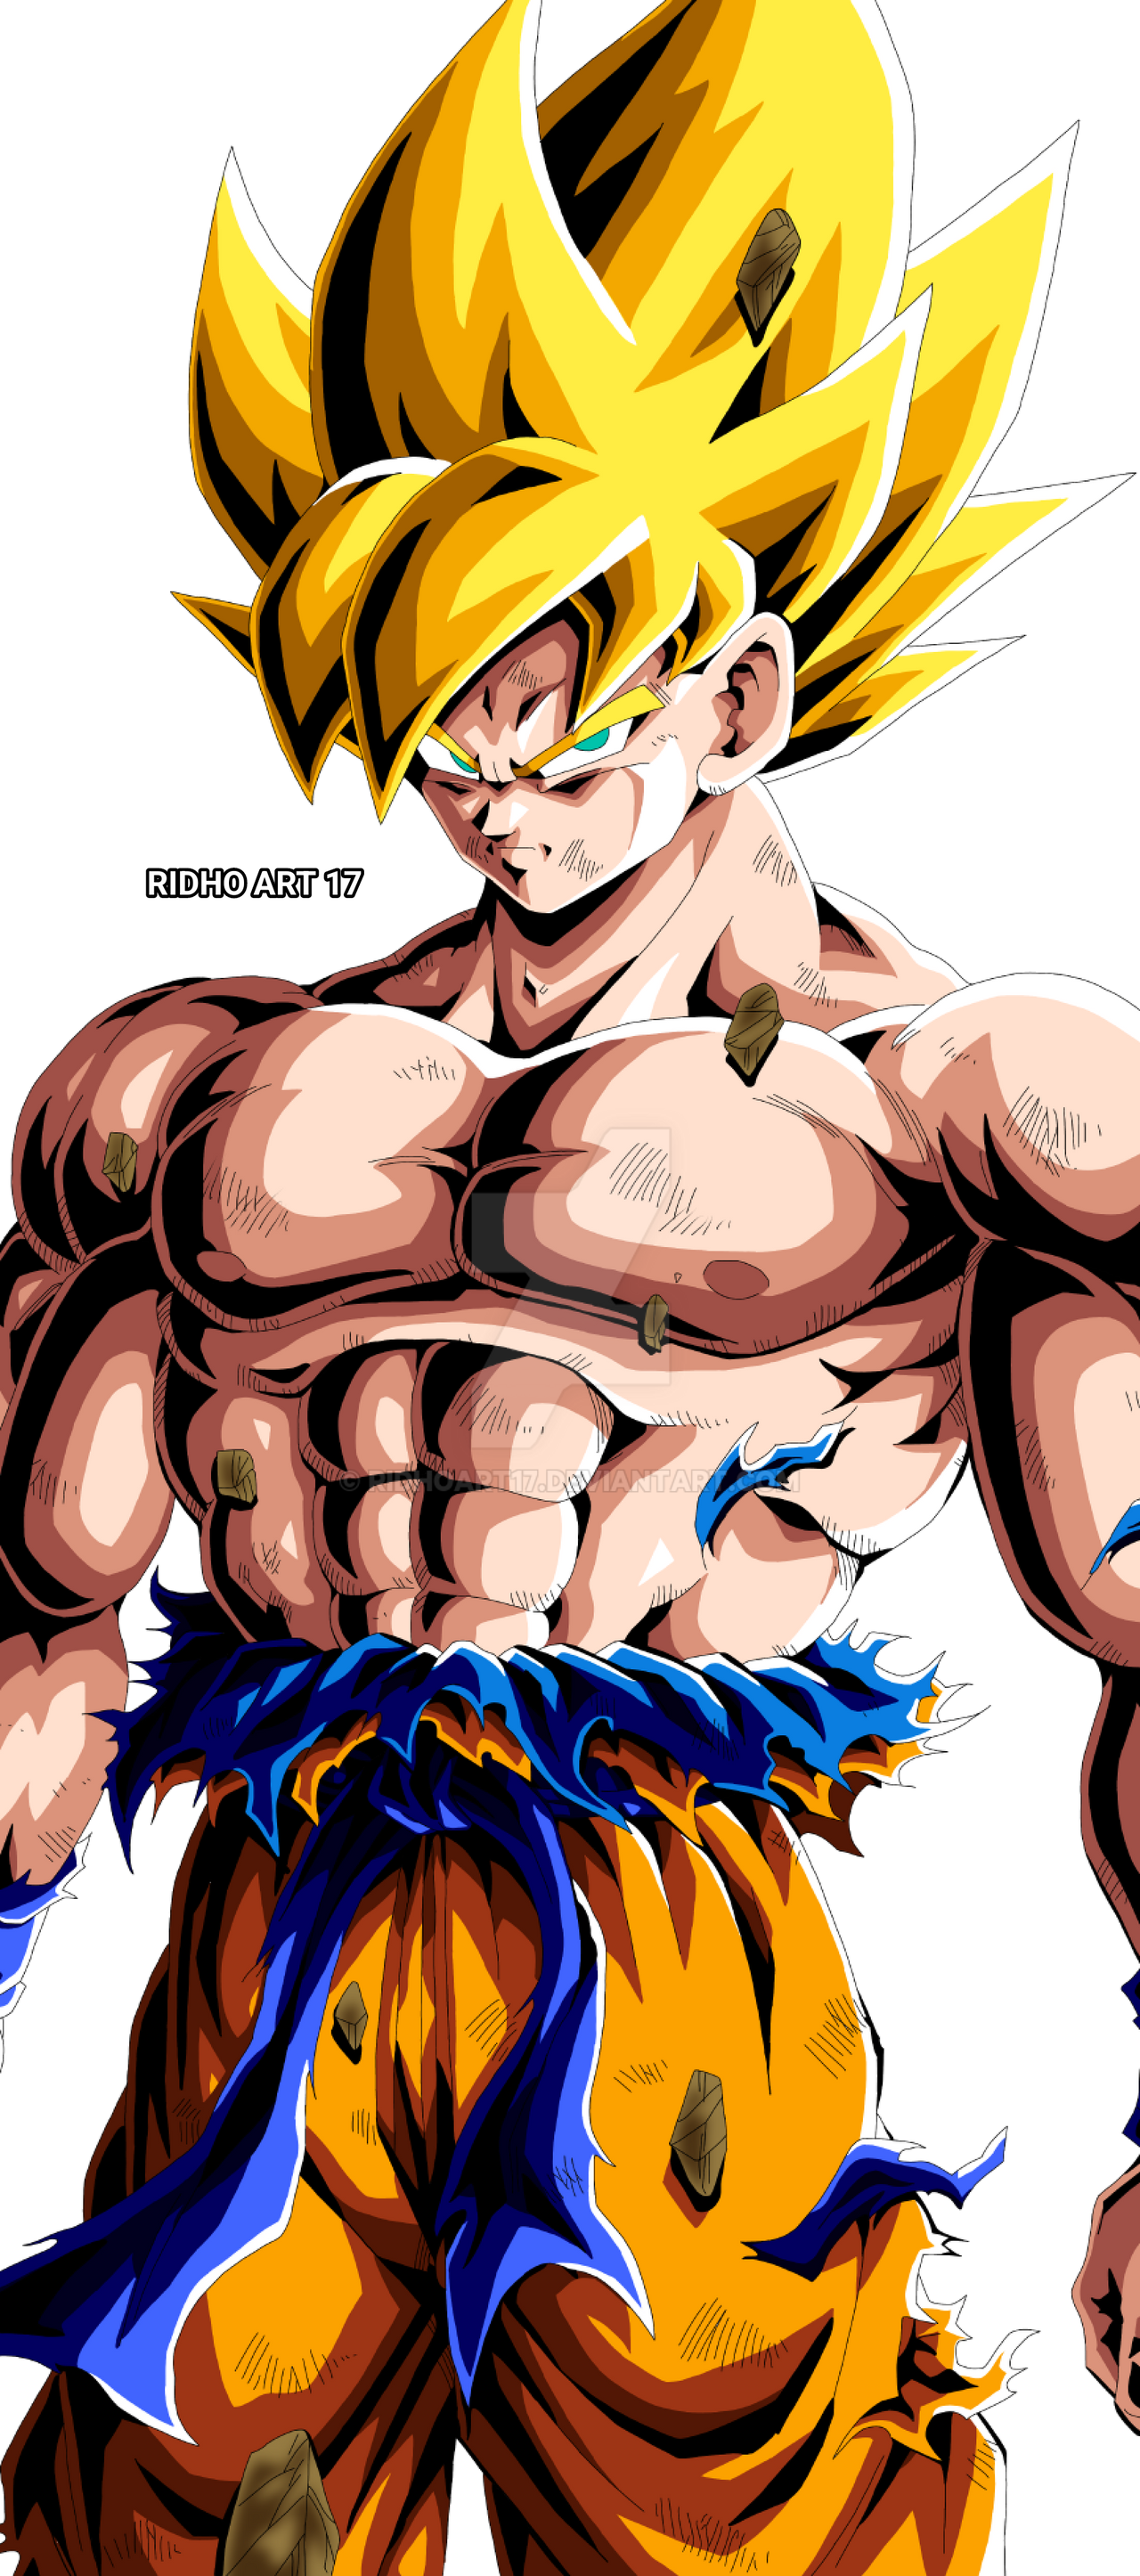 Super Saiyan 3 Goku by SatZBoom on DeviantArt